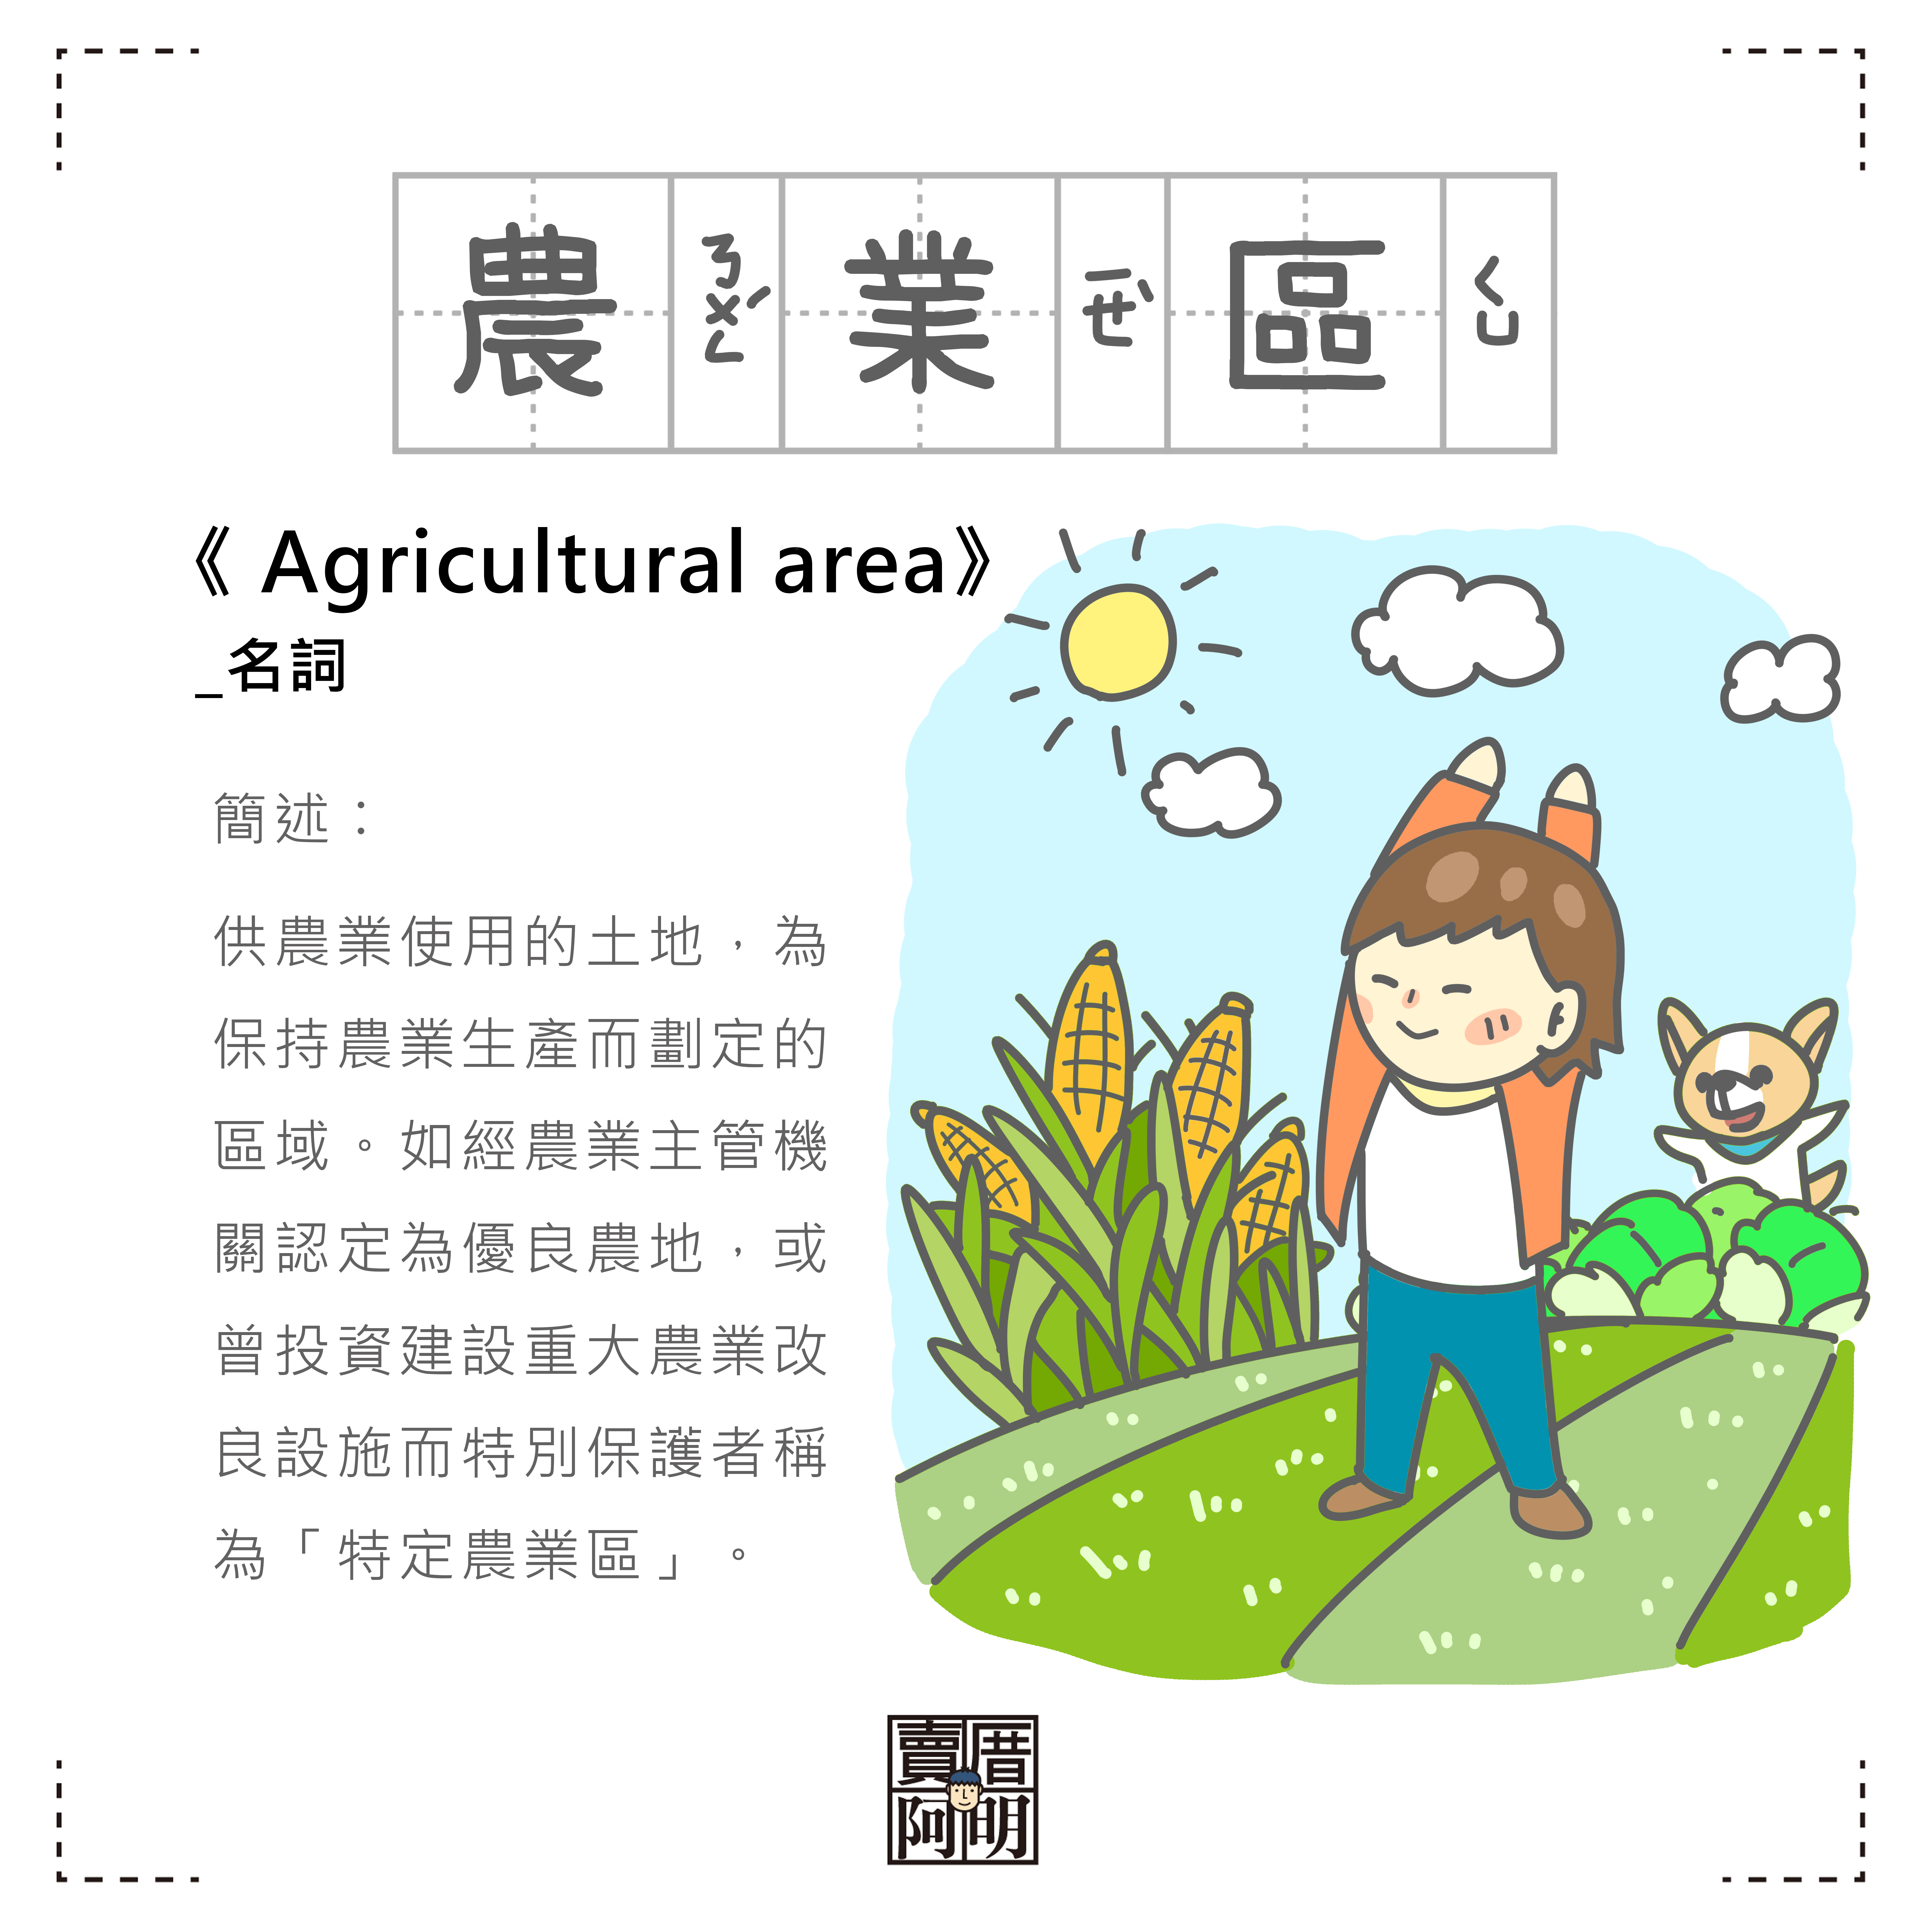 「房事辭典」 農業區Agricultural area